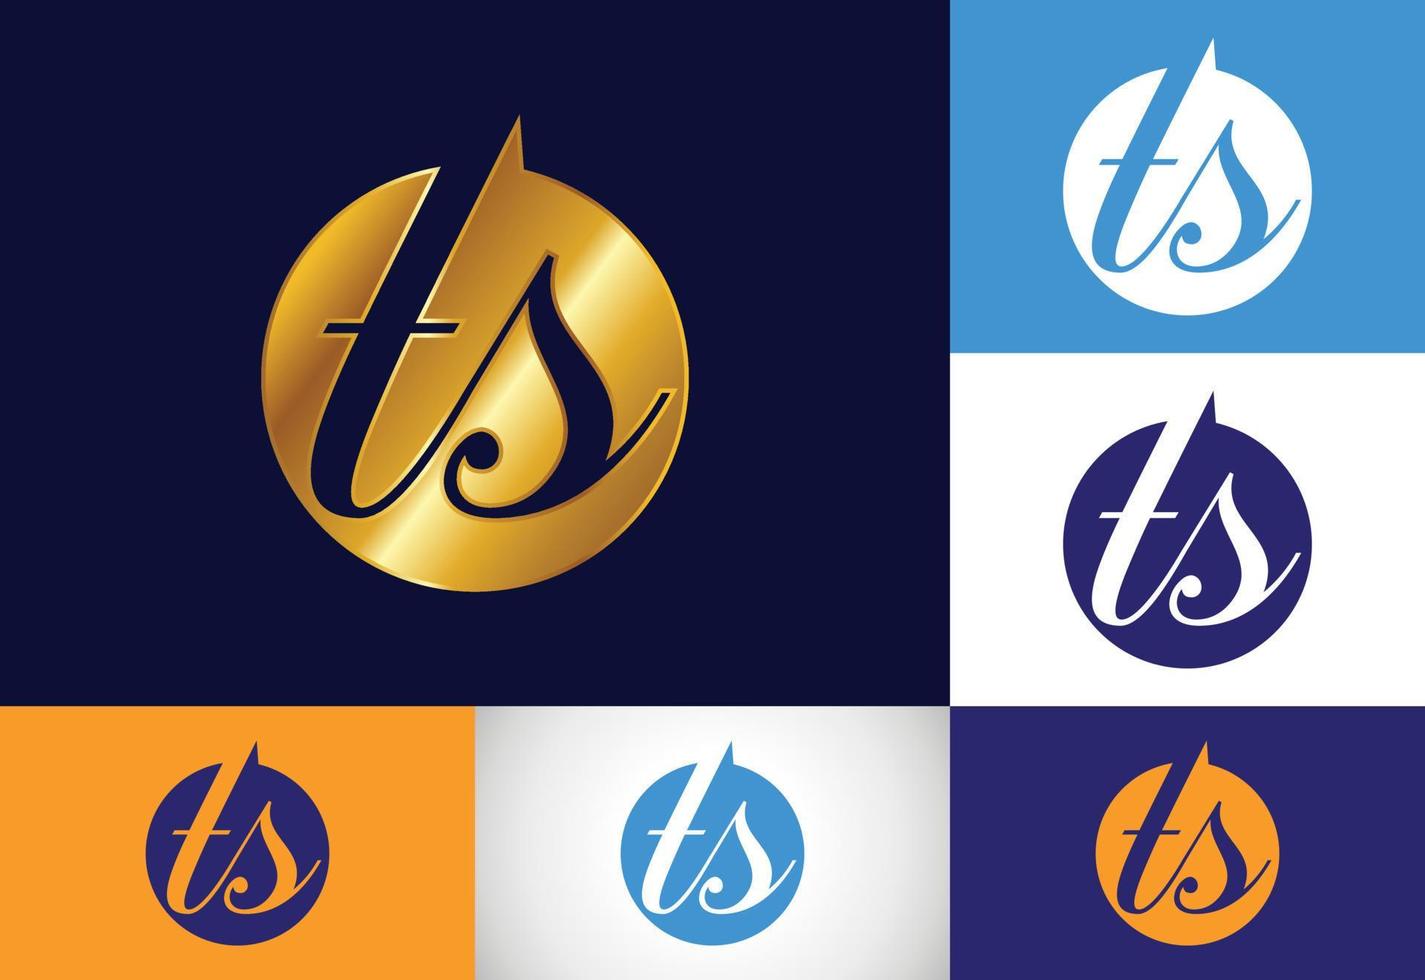 vector de diseño de logotipo de letra inicial ts. símbolo del alfabeto gráfico para la identidad empresarial corporativa